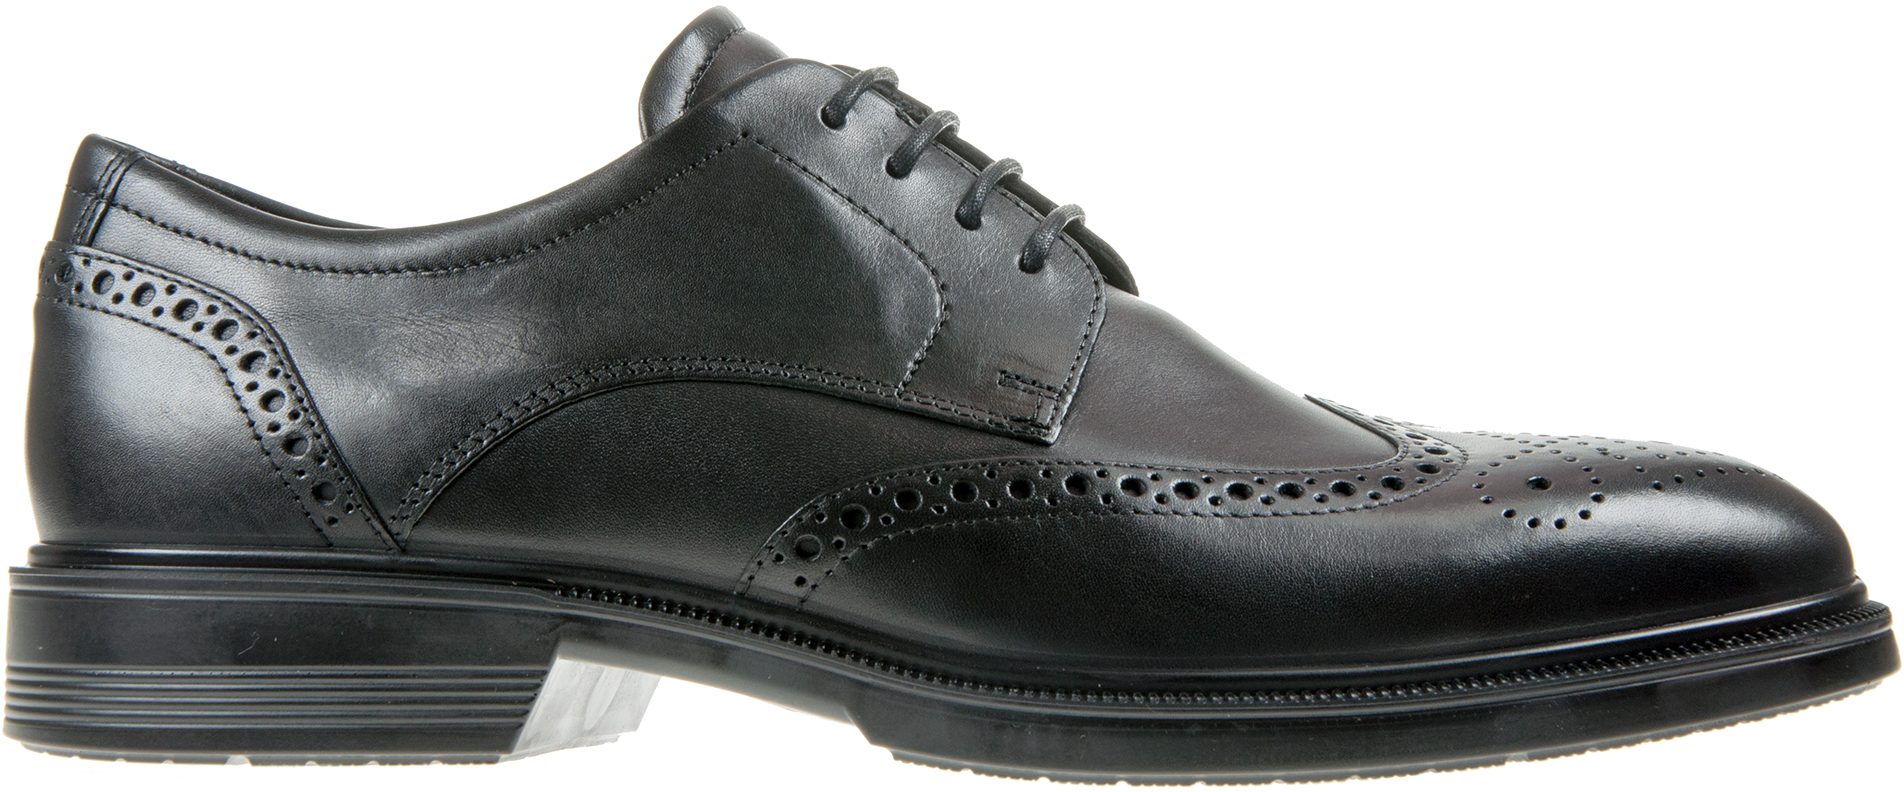 Ecco Lisbon Black 622164 01001 - Formal Shoes - Humphries Shoes